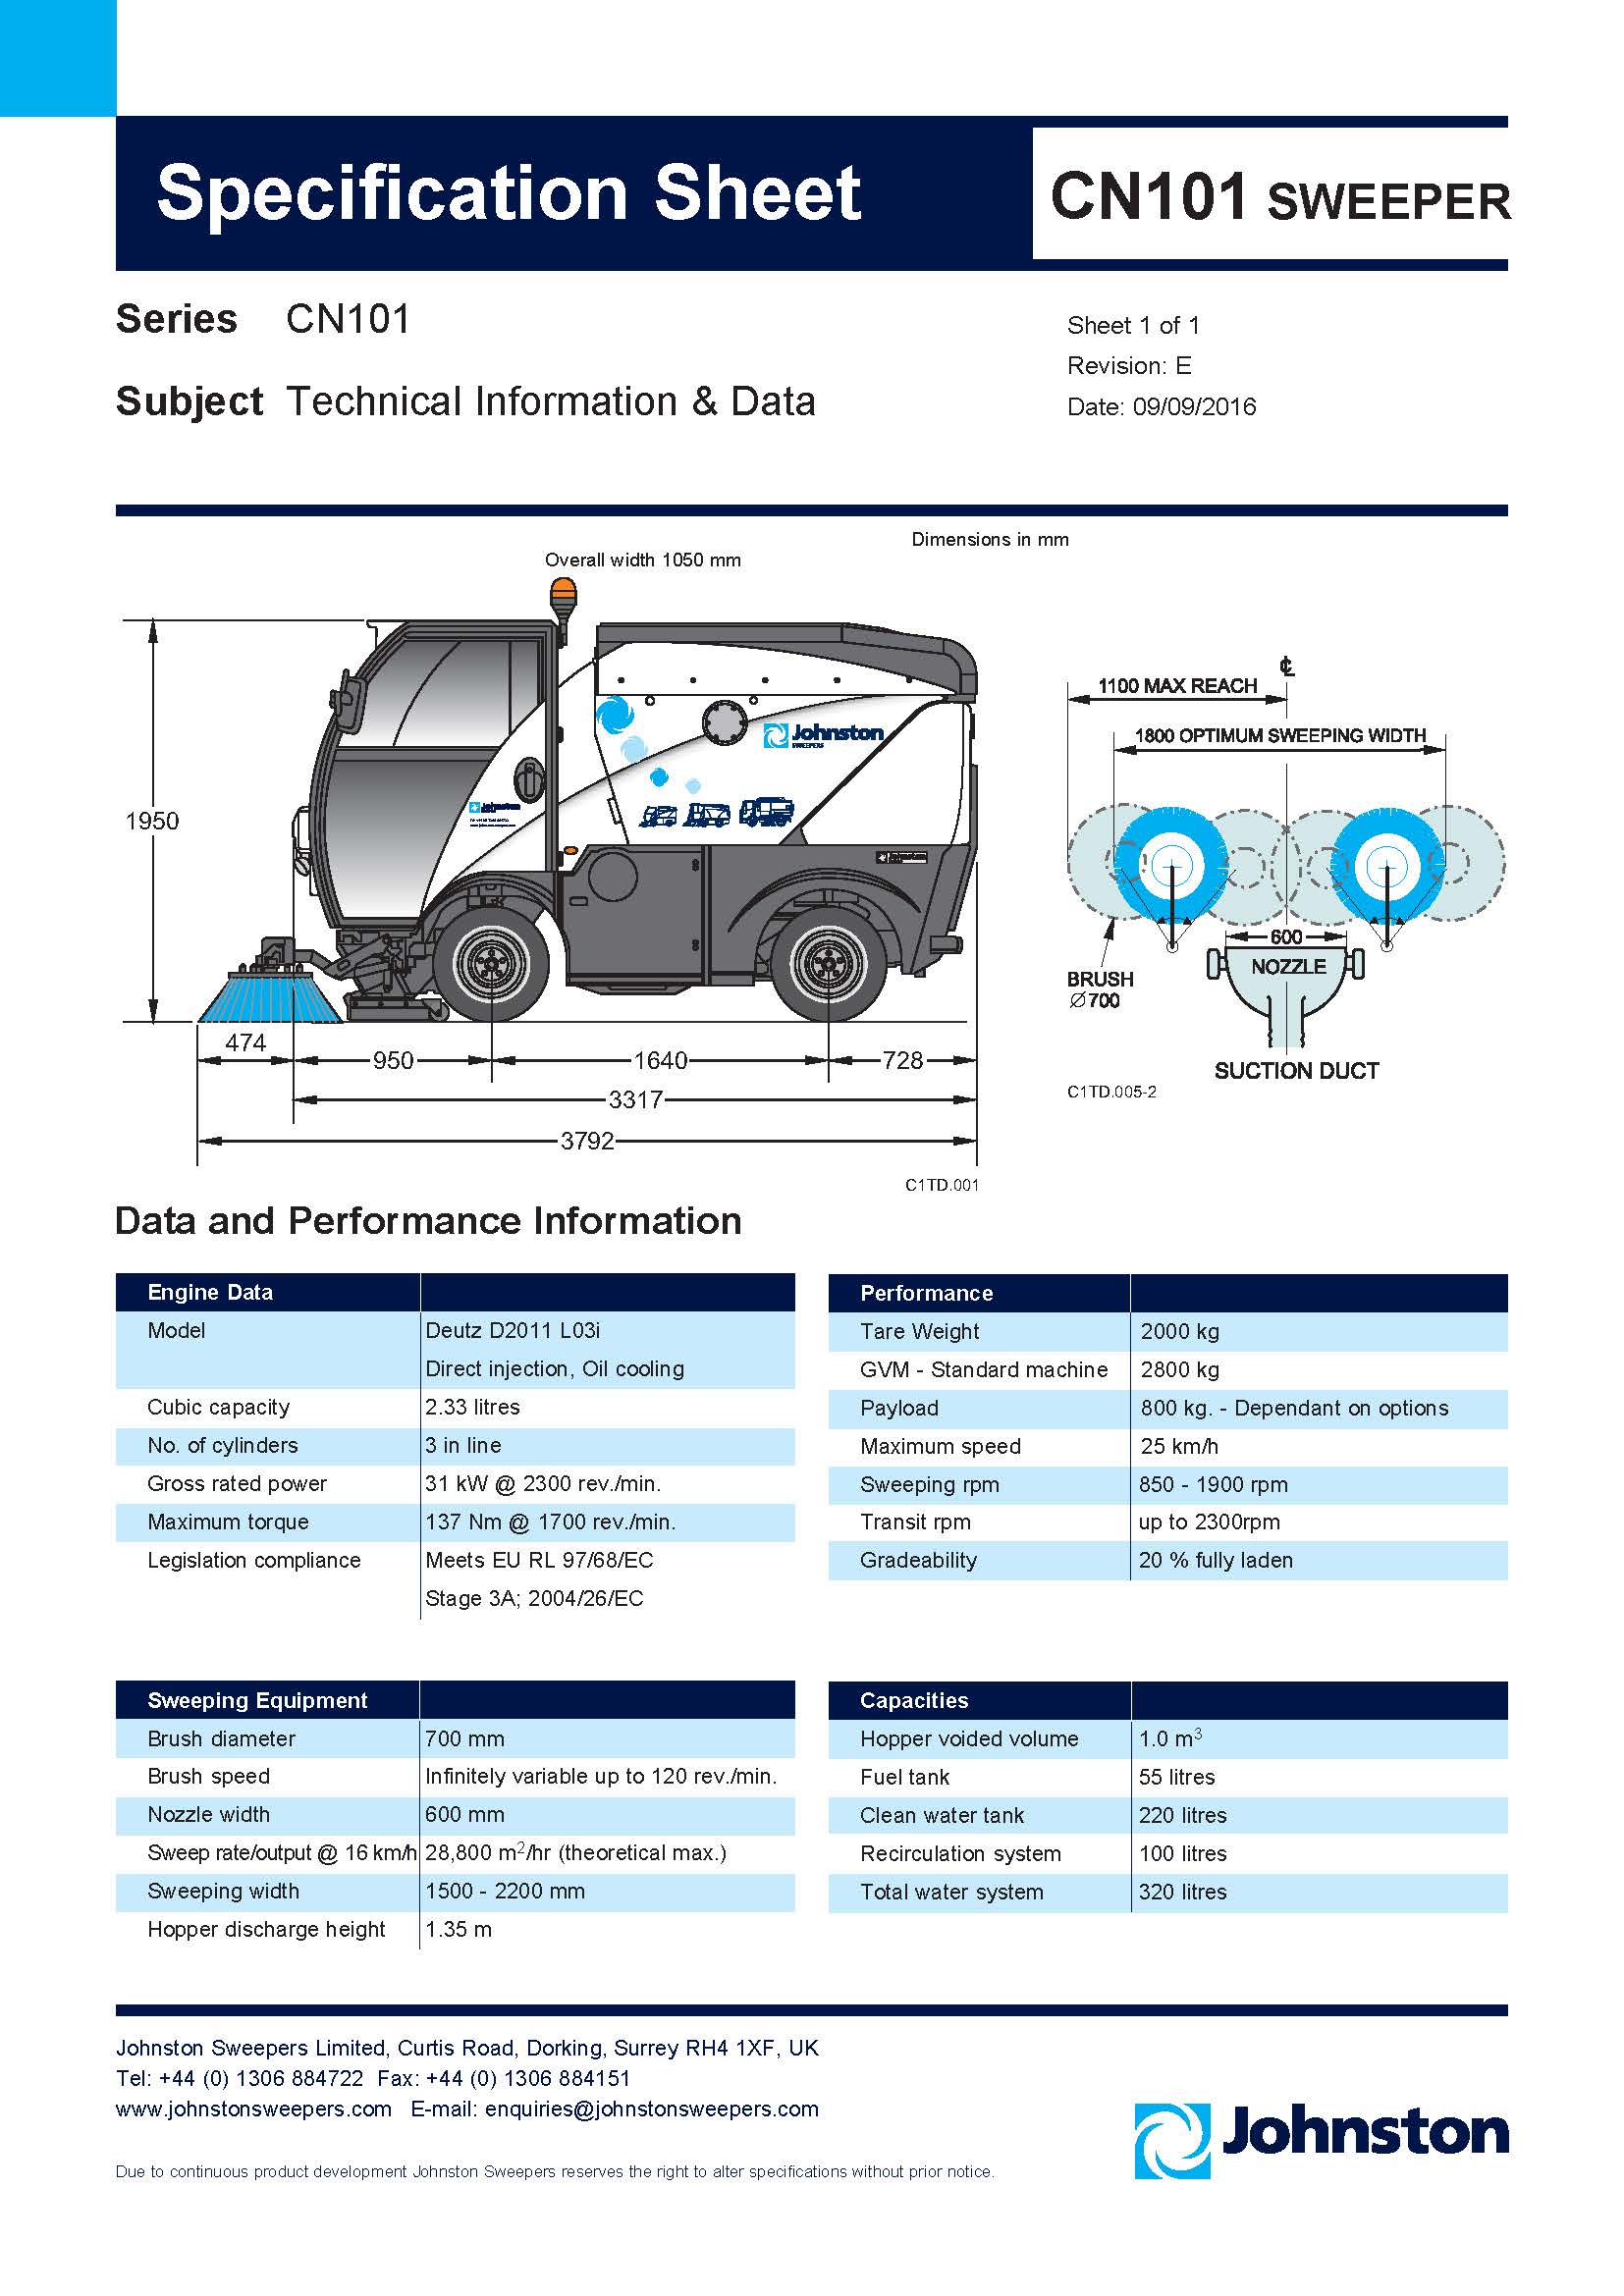 Johnston CN101 Technical Datasheet